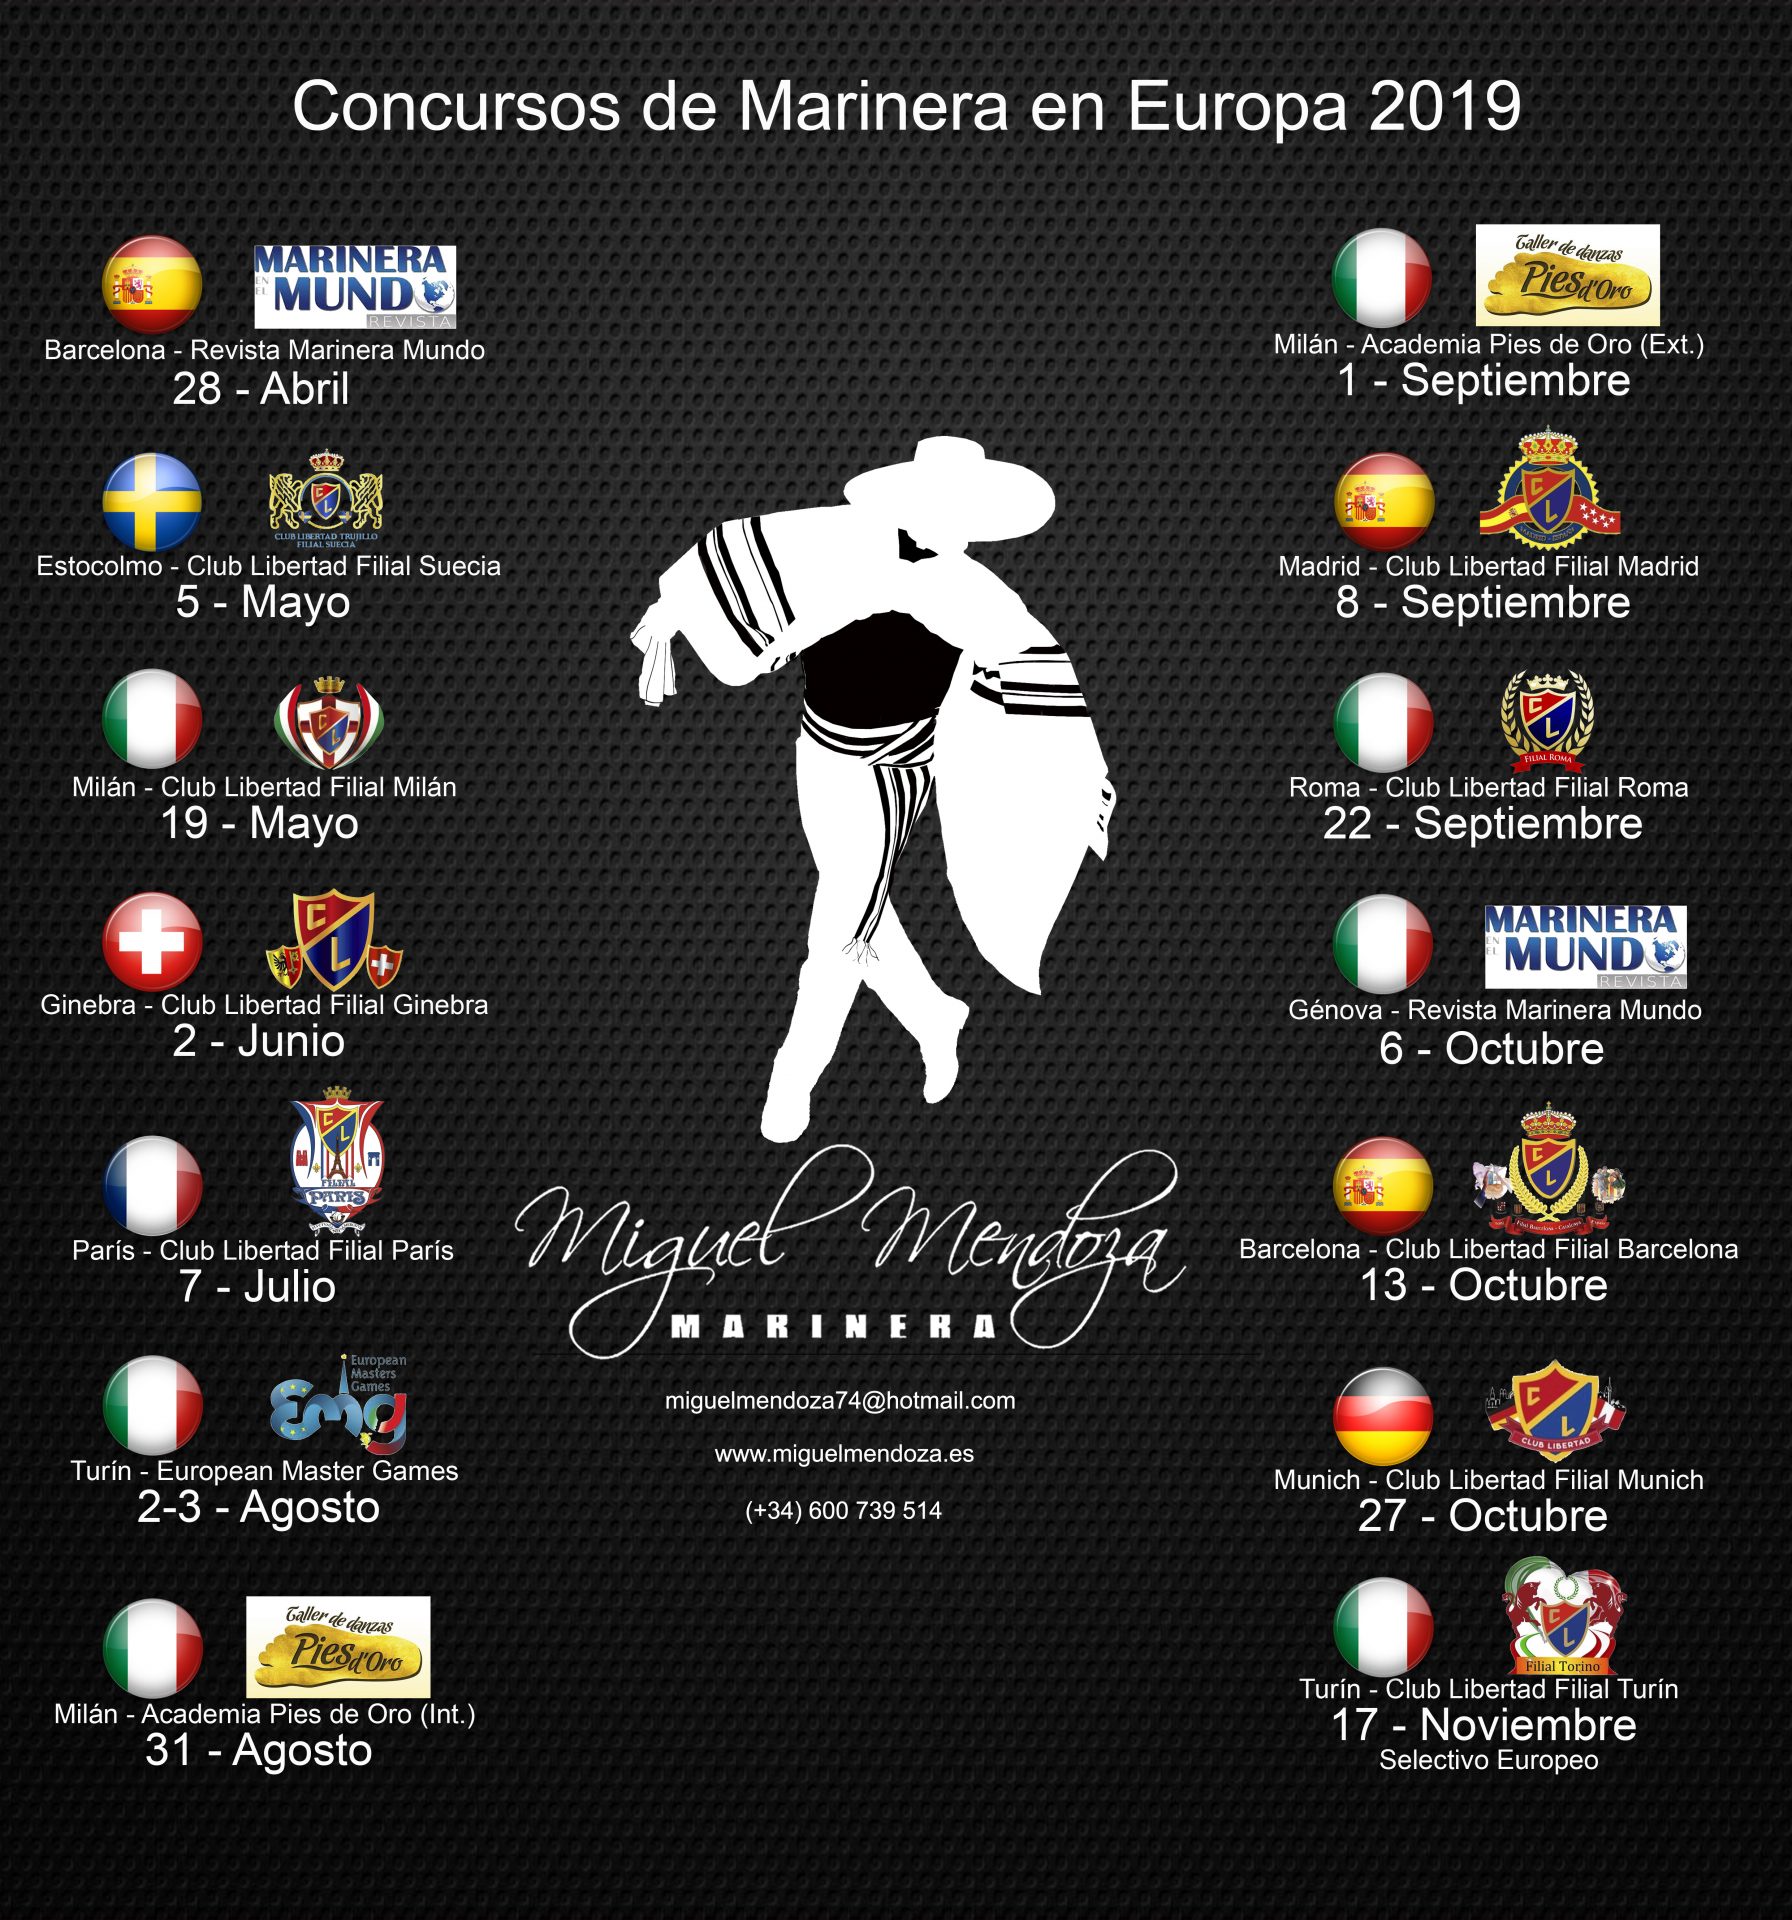 Concursos de Marinera en Europa 2019